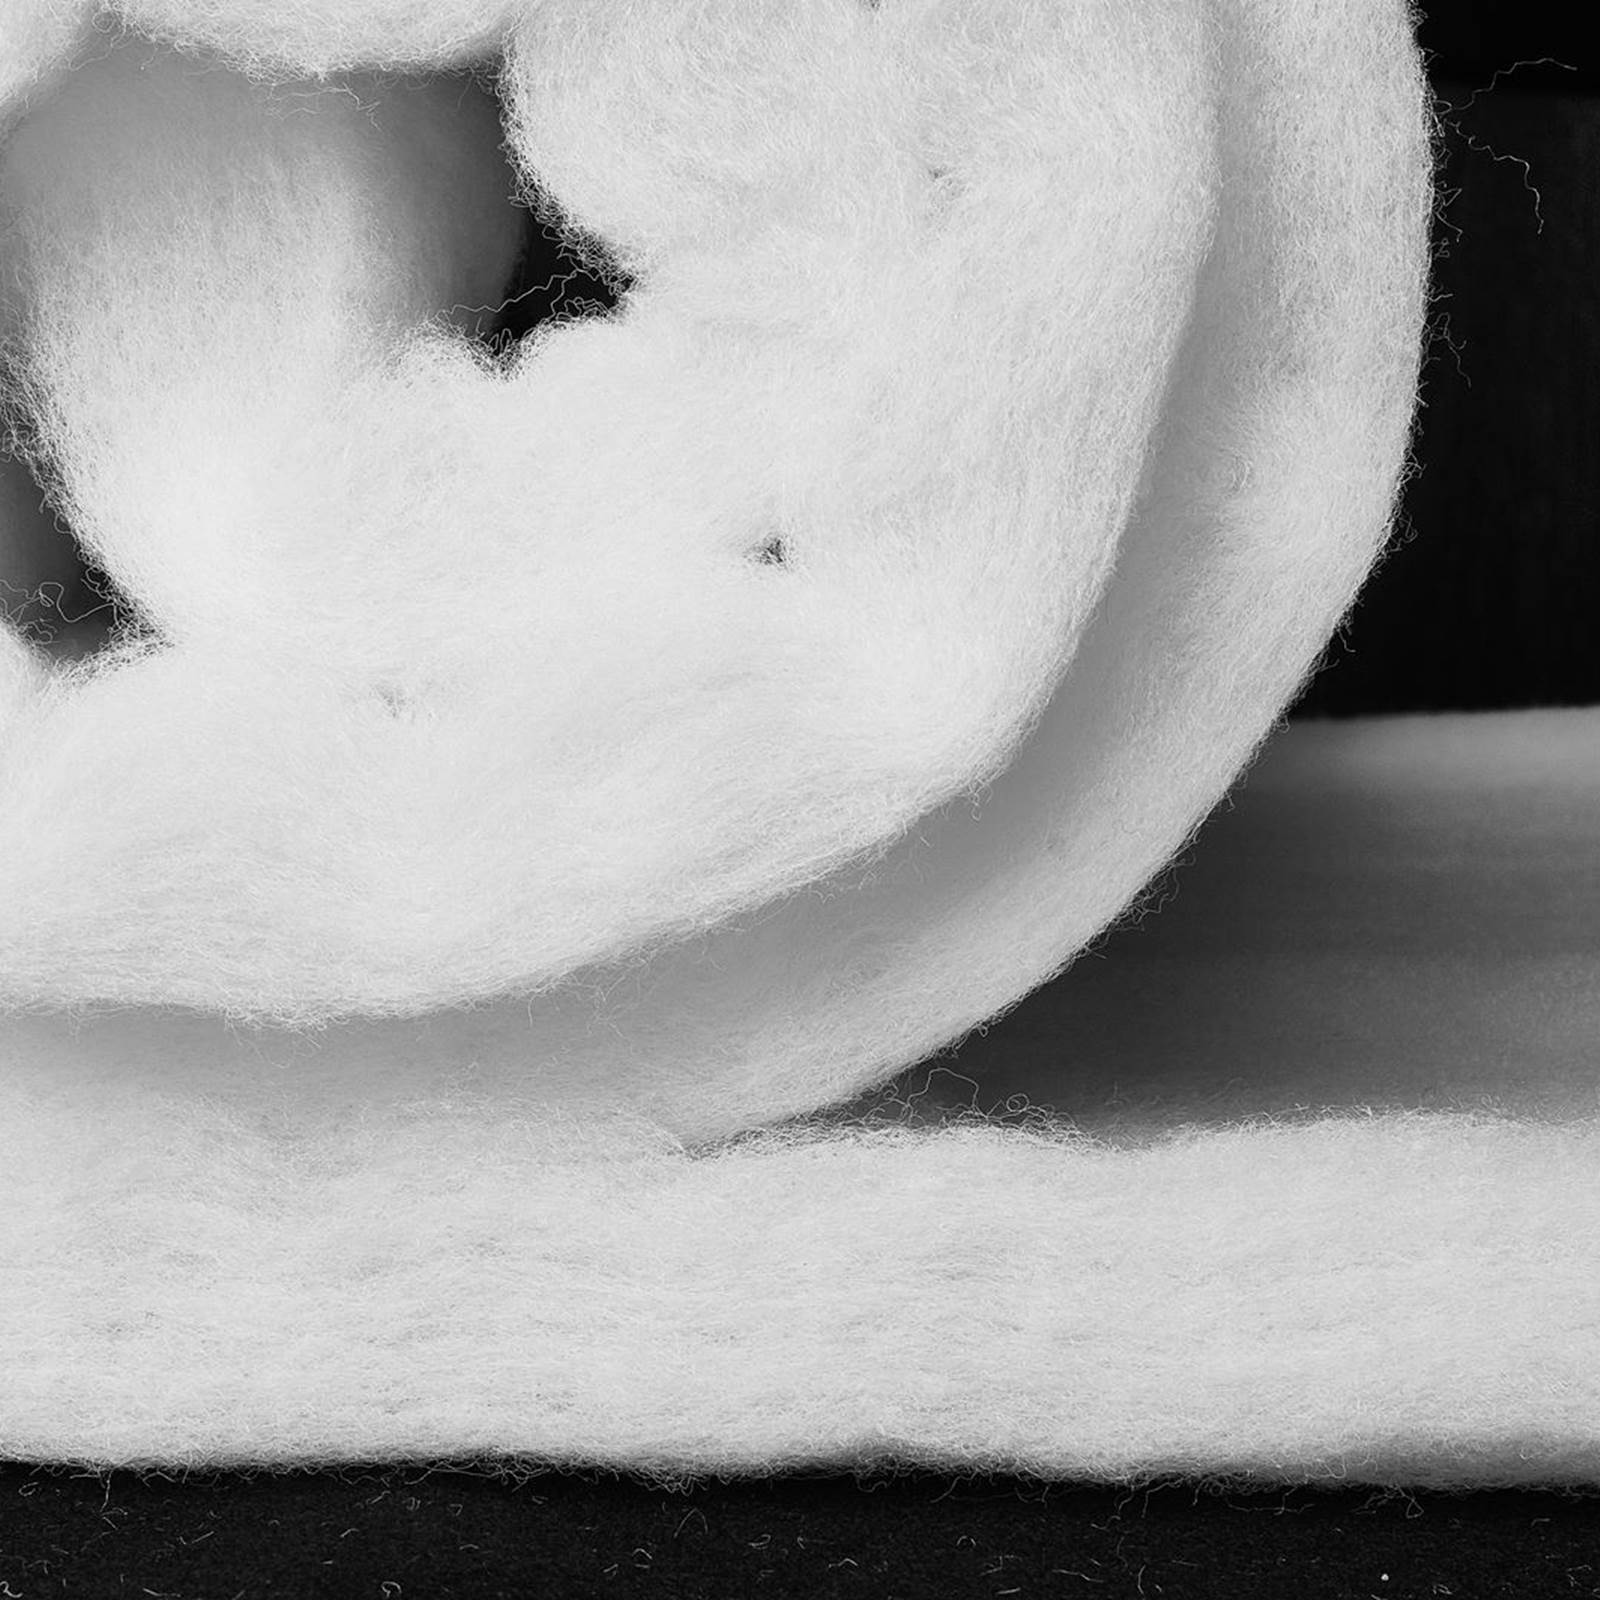 Snow mat - 330g, 210cm wide - snow fleece